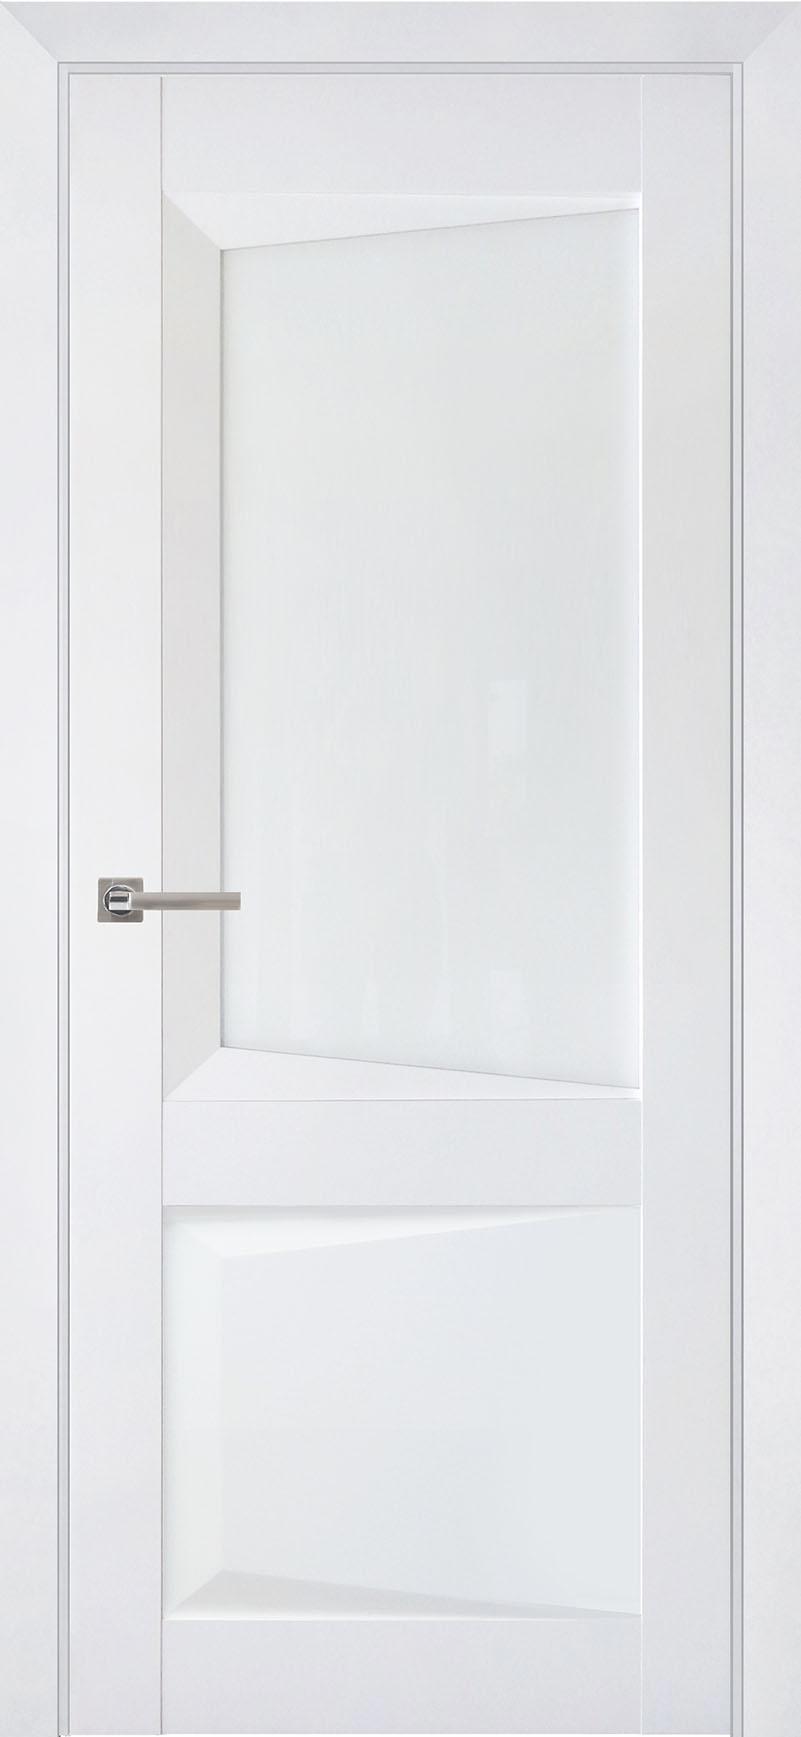 90903222 Межкомнатная дверь Перфекто 108 остеклённая без замка и петель в комплекте 200x80см белый STLM-0420048 UBERTURE